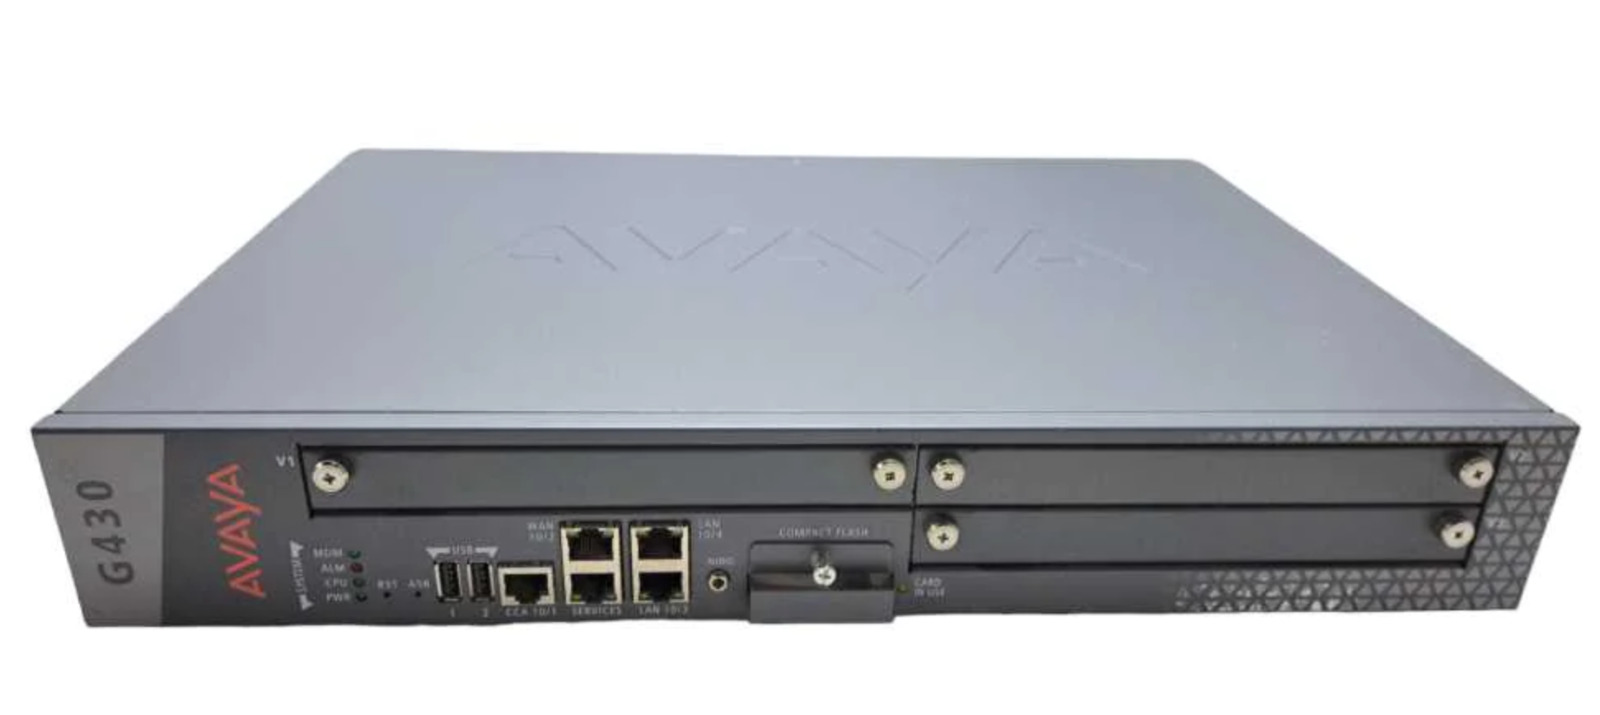 Genuine Avaya G430 Media Gateway w/ MM710B & MM711 Module P/N: 700476393 Tested